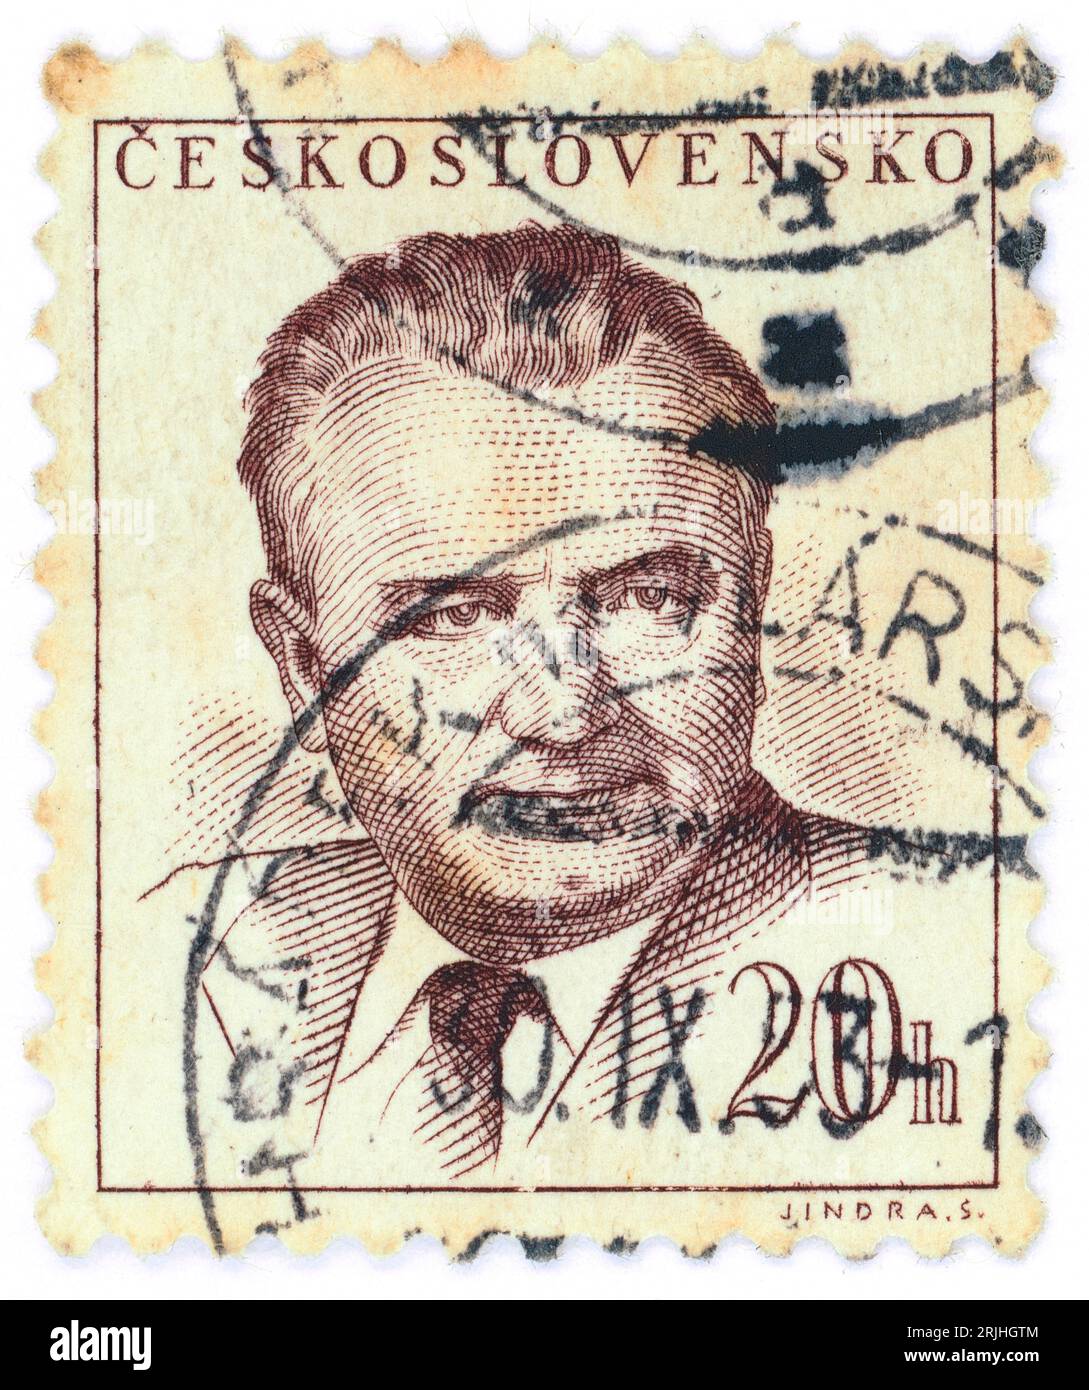 Klement Gottwald (1896–1953). Briefmarke, ausgestellt in der Tschechoslowakei 1948. Klement Gottwald war ein tschechischer kommunistischer Politiker, der von 1929 bis zu seinem Tod 1953 Führer der Kommunistischen Partei der Tschechoslowakei war – bis 1945 als Generalsekretär und von 1945 bis 1953 als Vorsitzender. Er war der erste Führer der Kommunistischen Tschechoslowakei von 1948 bis 1953. Stockfoto